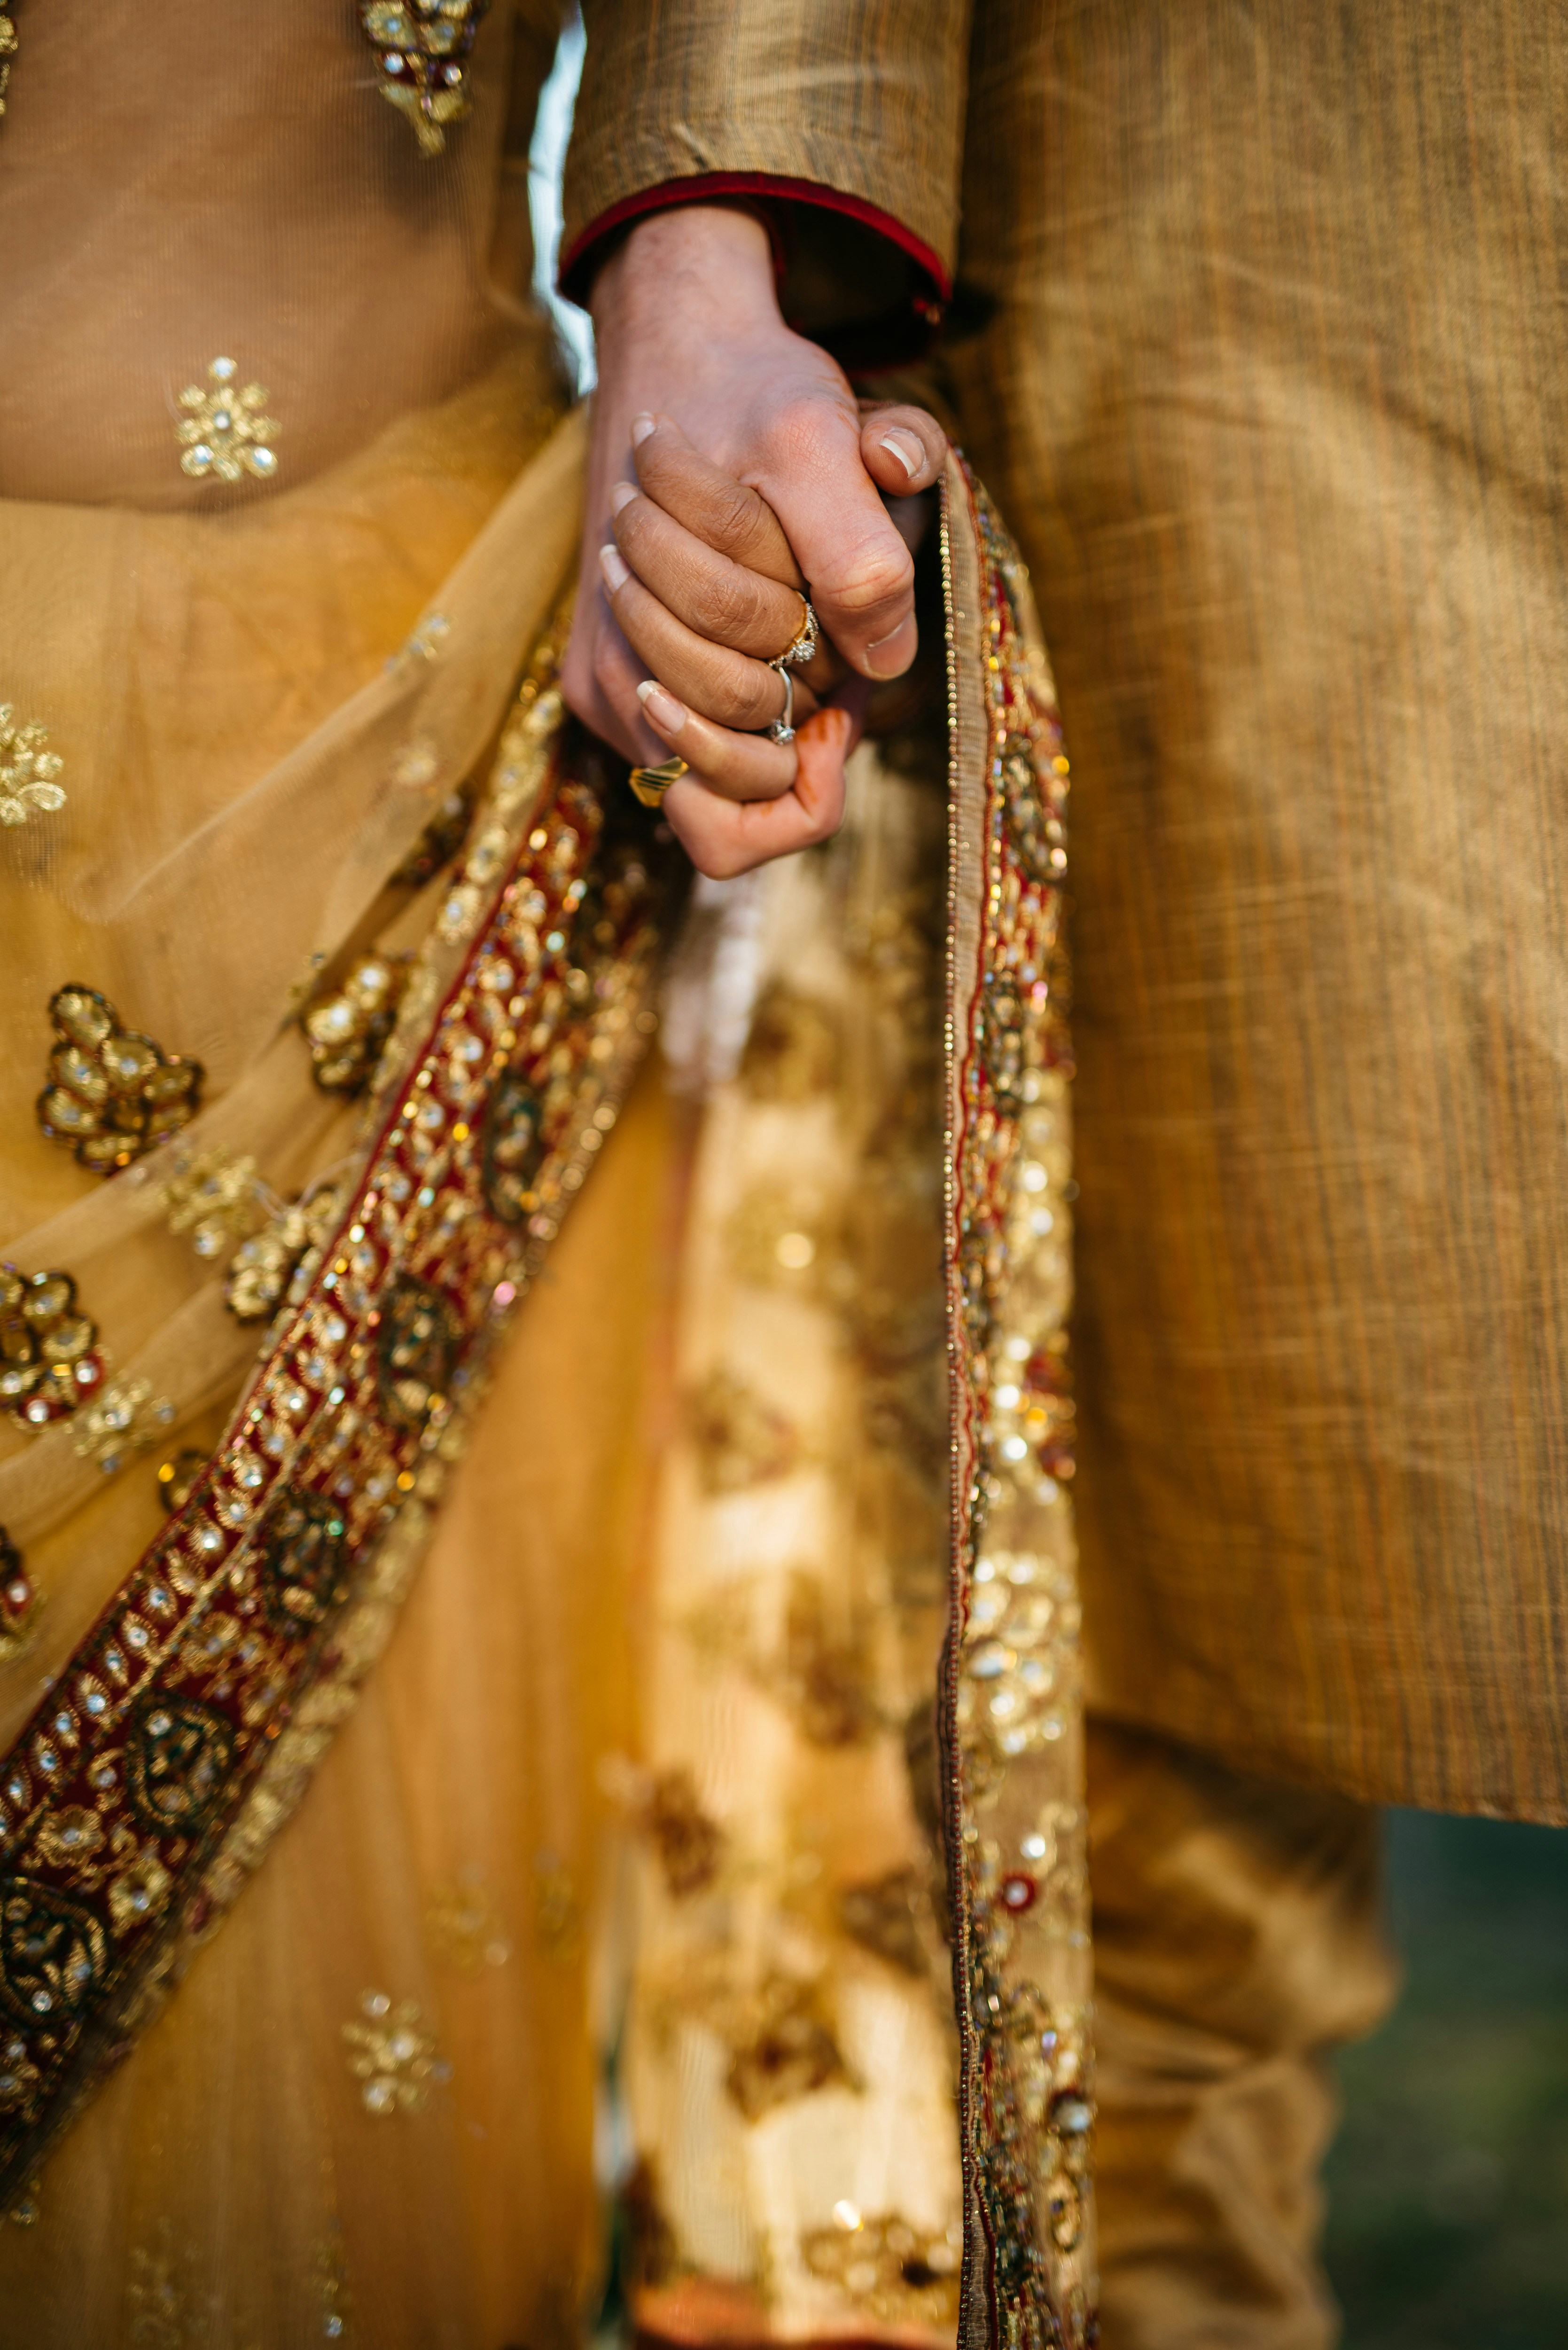 Indian Wedding Couple